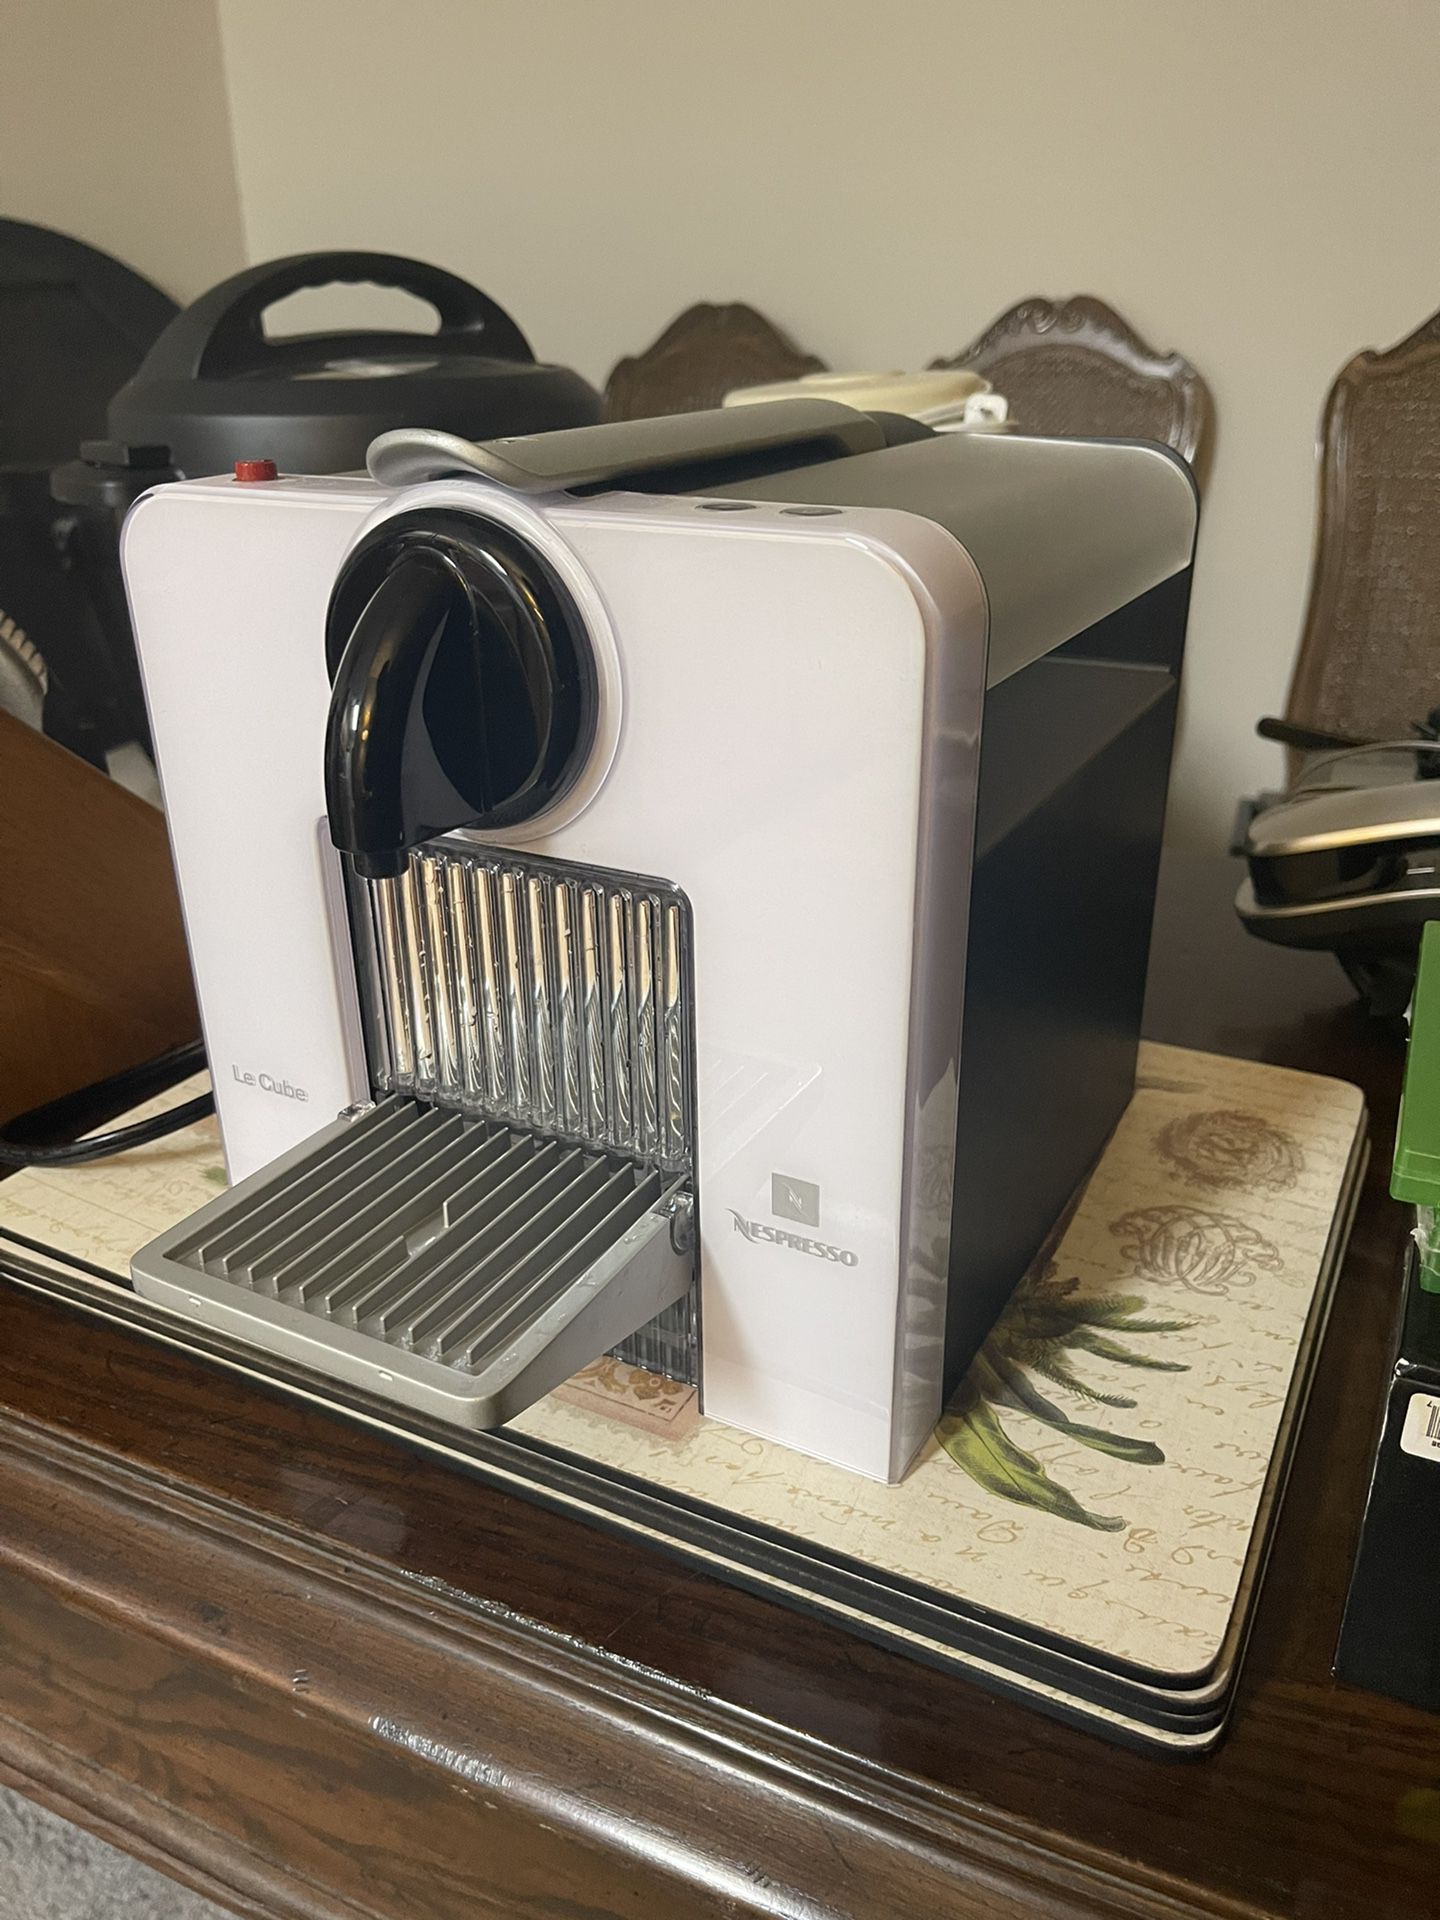 Nespresso Le Cube Espresso Machine 